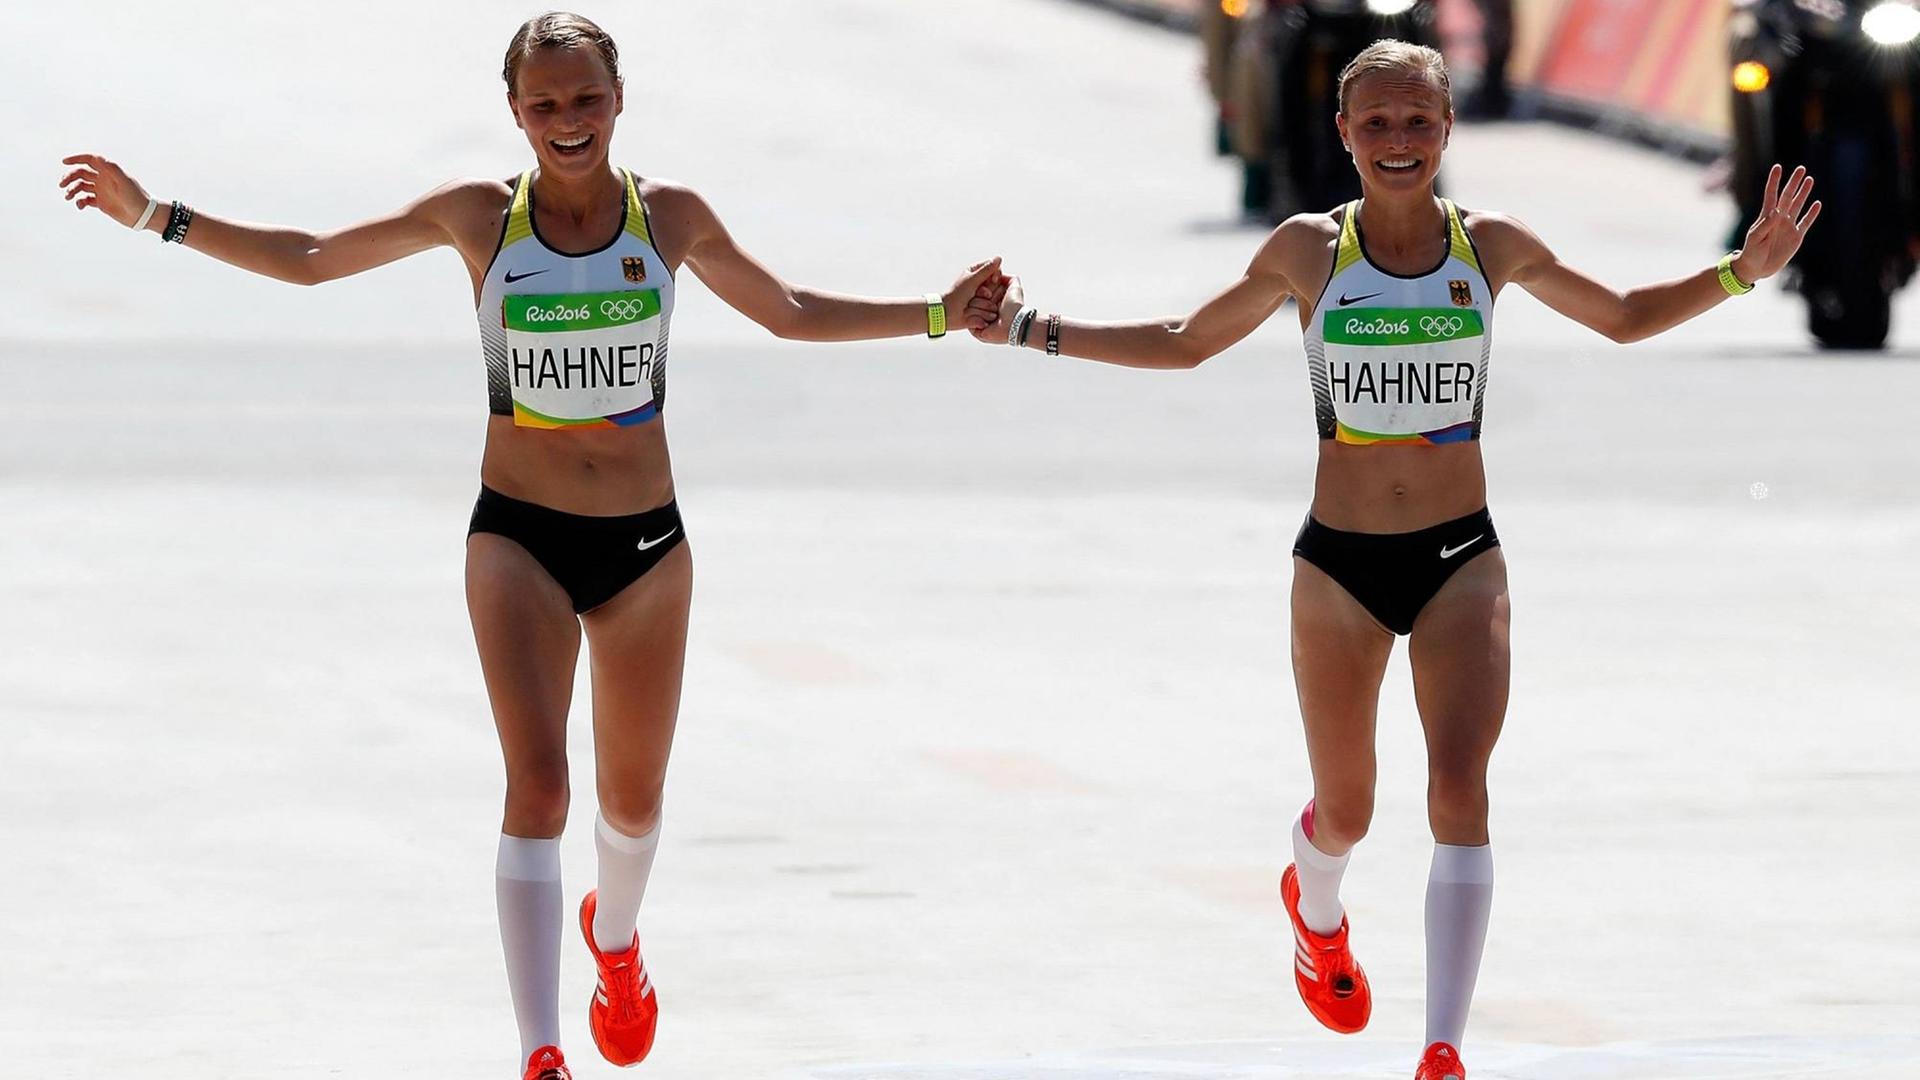 Die deutschen Zwillinge Lisa und Anna Hahner kommen beim olympischen Marathon in Rio de Janeiro Händchen haltend ins Ziel.